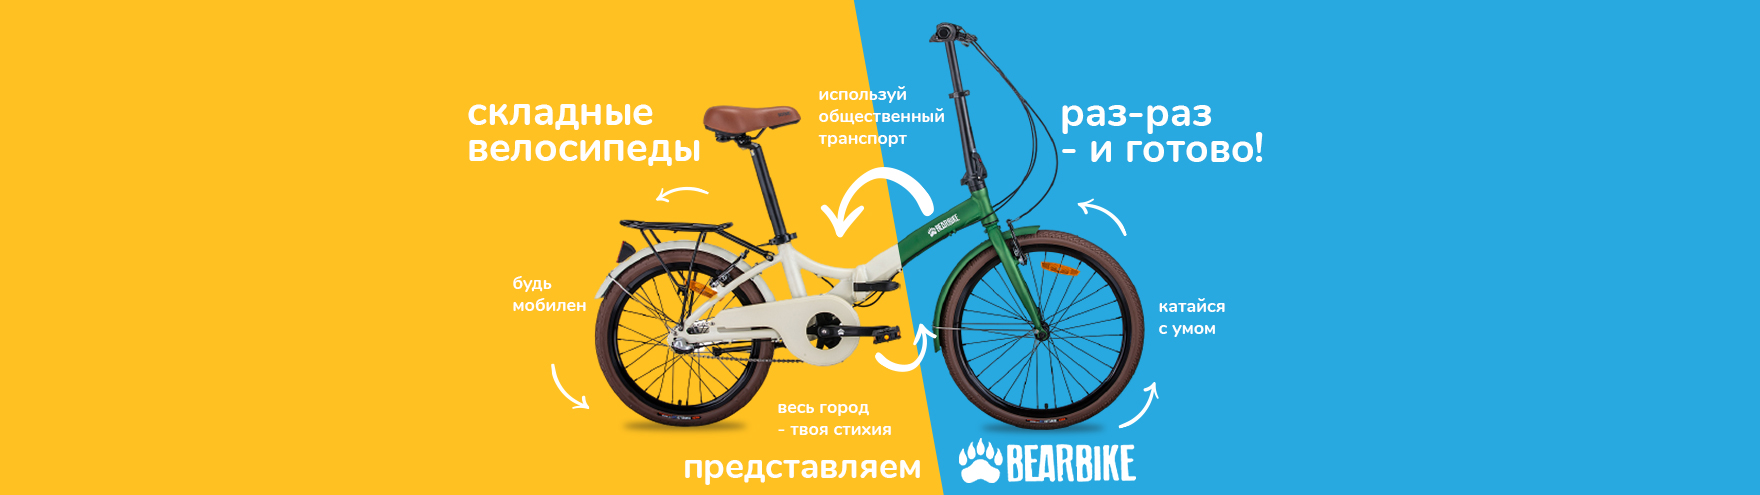 Новые складные велосипеды BearBike